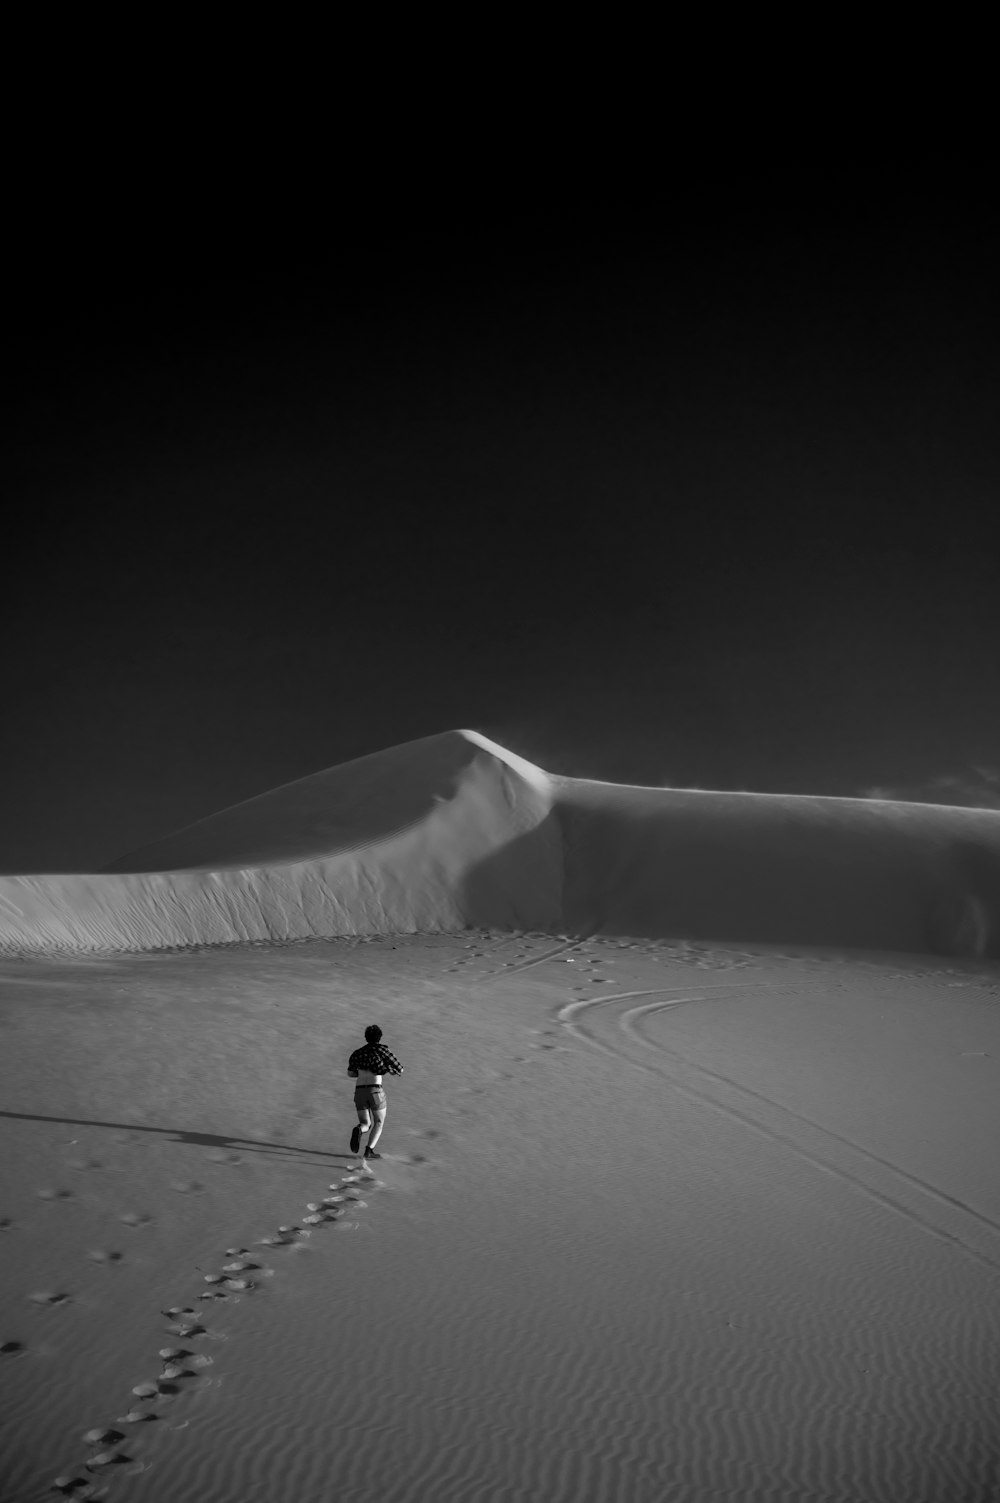 a man walking across a sandy desert under a dark sky